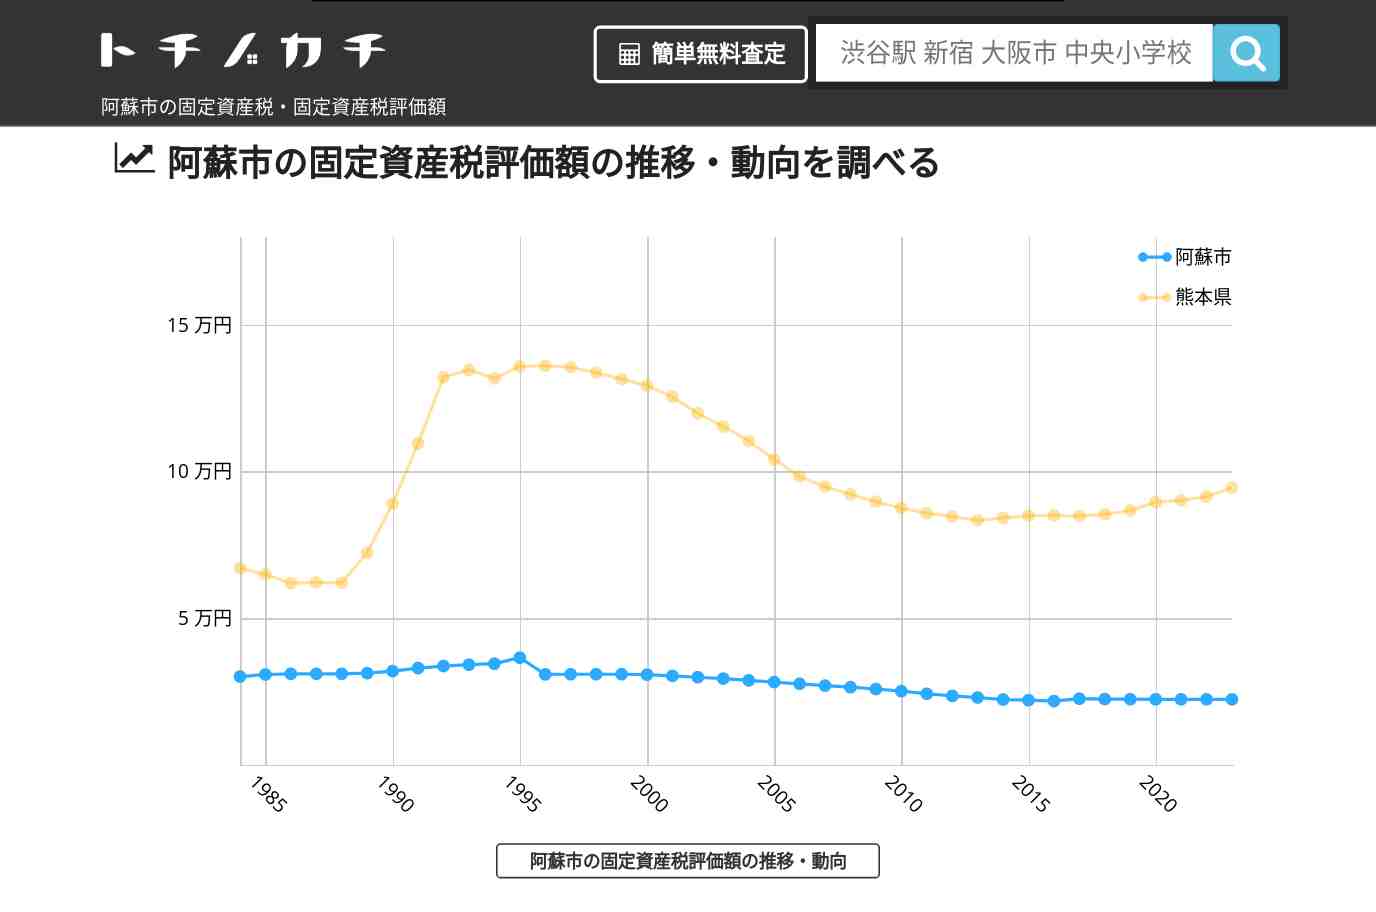 内牧小学校(熊本県 阿蘇市)周辺の固定資産税・固定資産税評価額 | トチノカチ